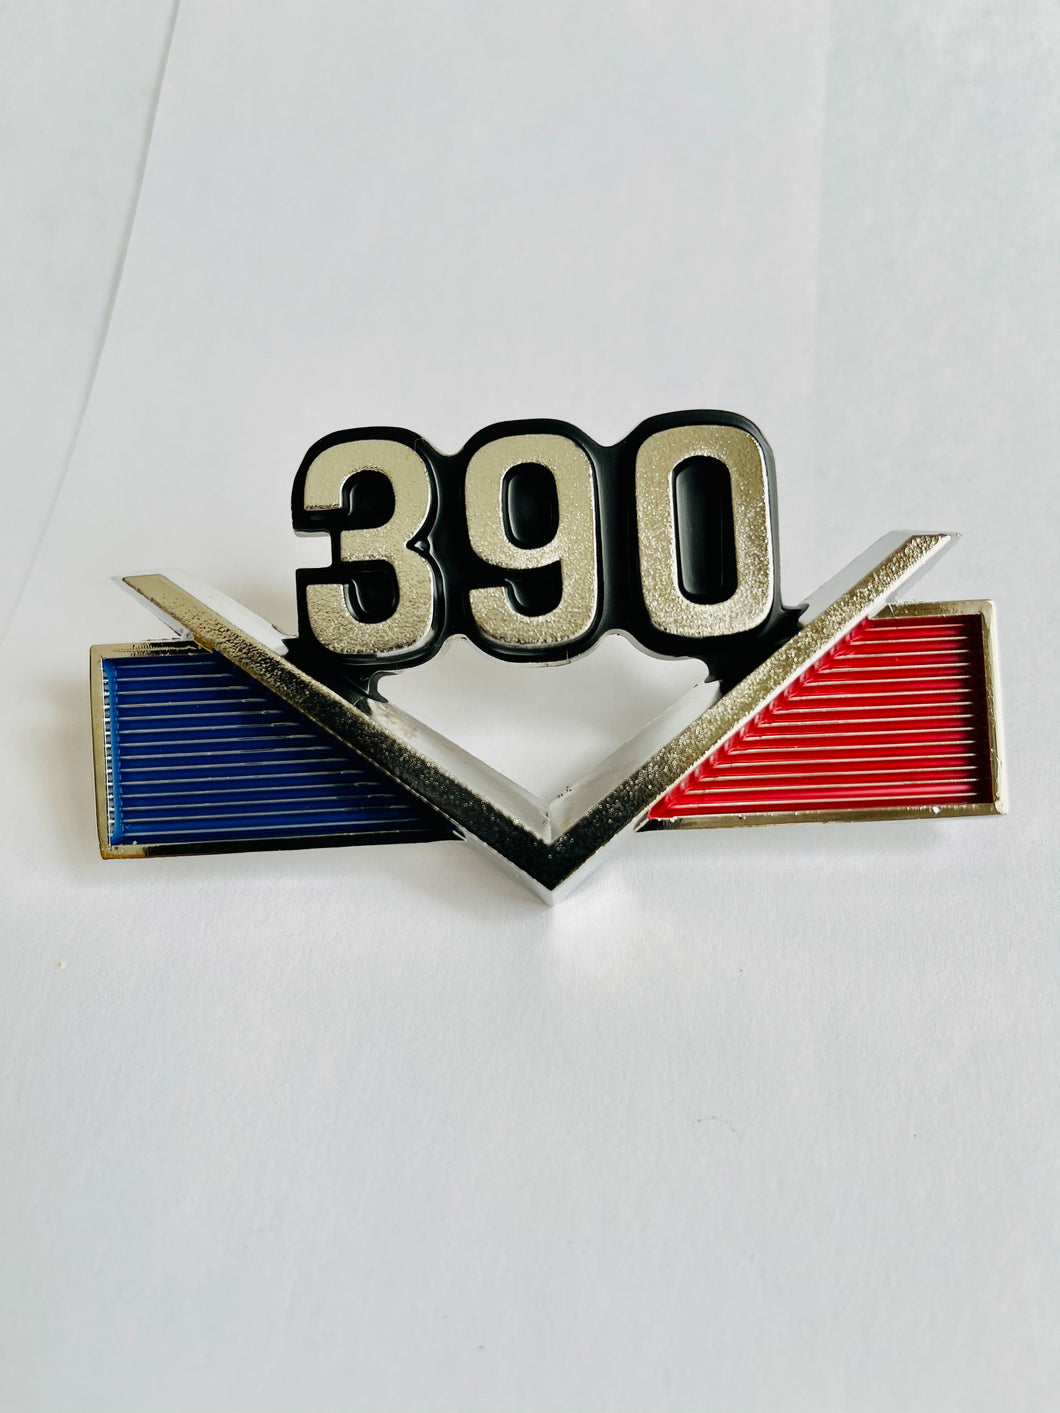 AMC 390 Emblem